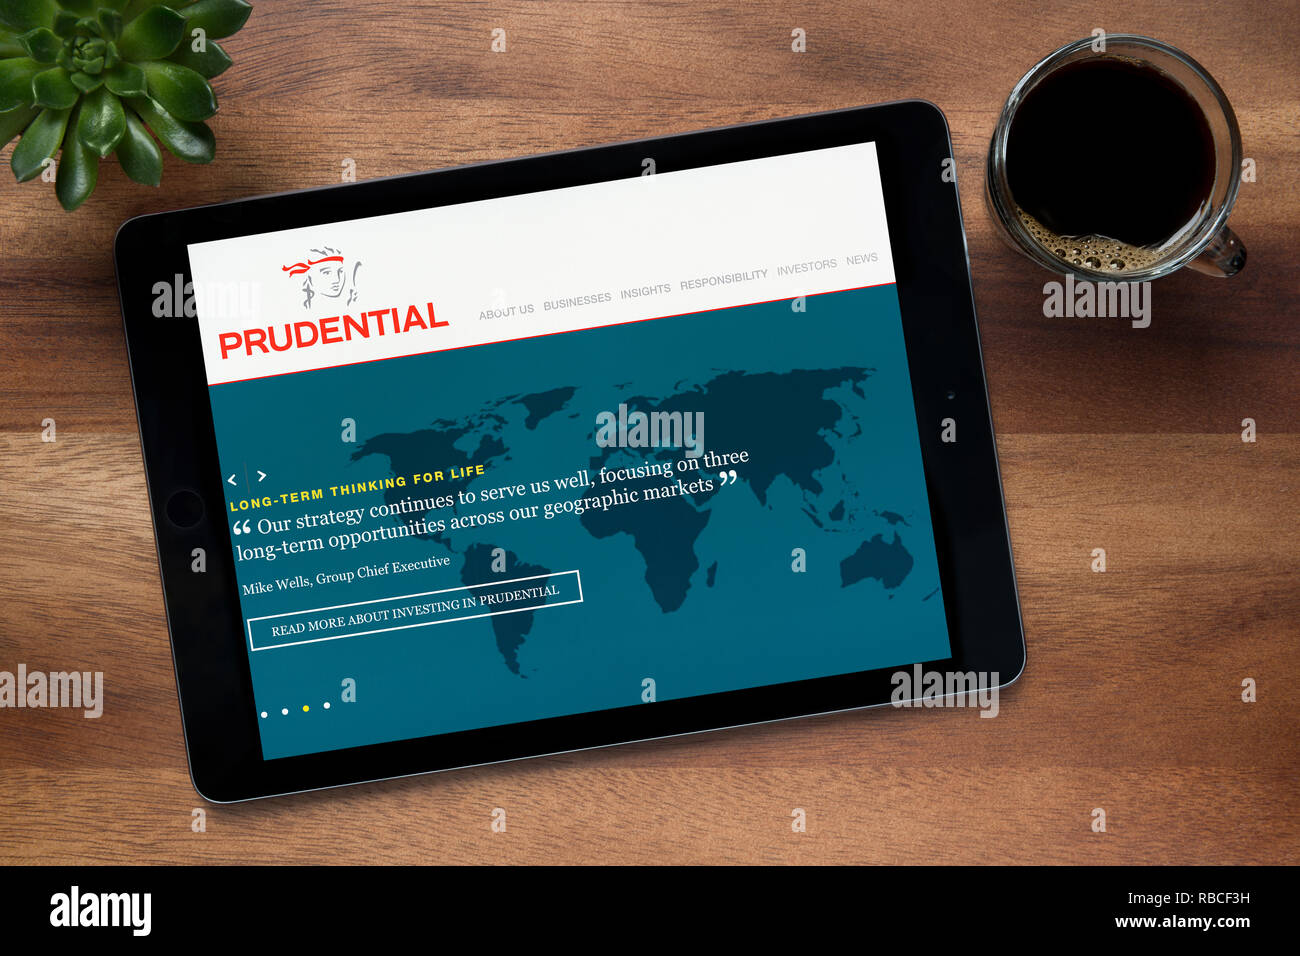 Le site web de Prudential est vu sur un iPad tablet, sur une table en bois avec une machine à expresso et d'une plante (usage éditorial uniquement). Banque D'Images